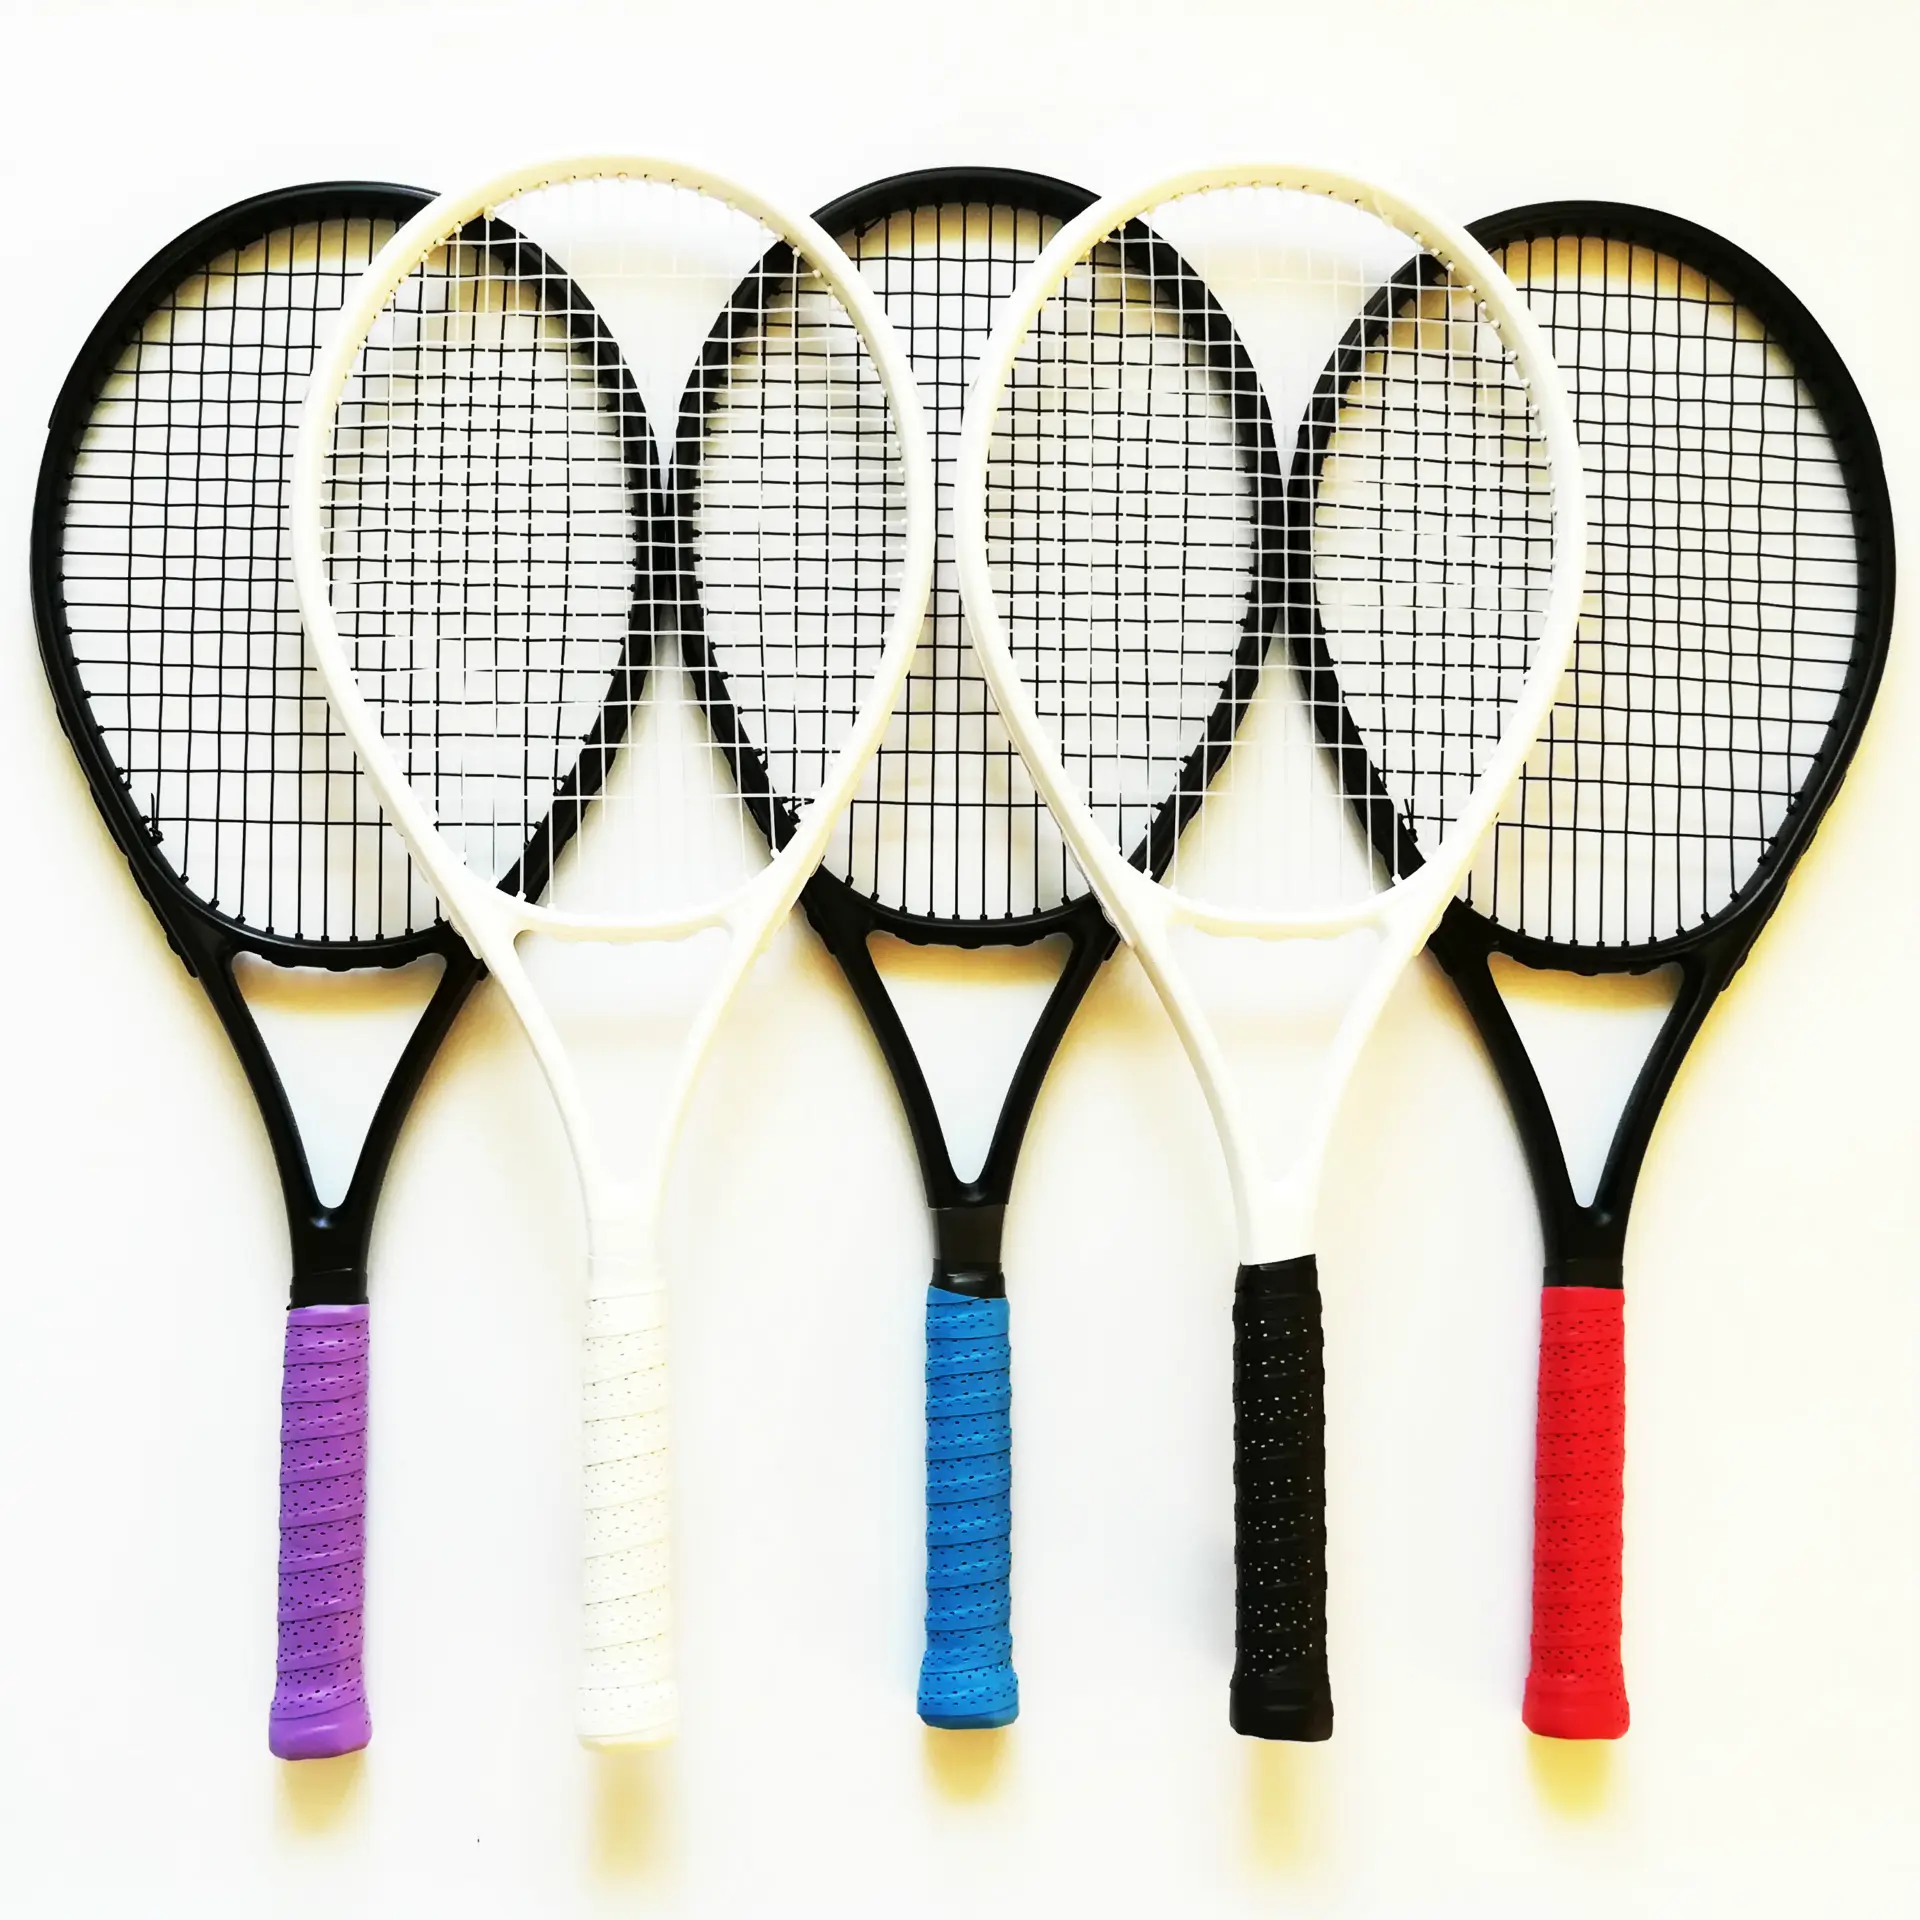 Raket tenis latihan olahraga bingkai dan poros Aloi aluminium pemula profesional polos logo kustom kualitas tinggi